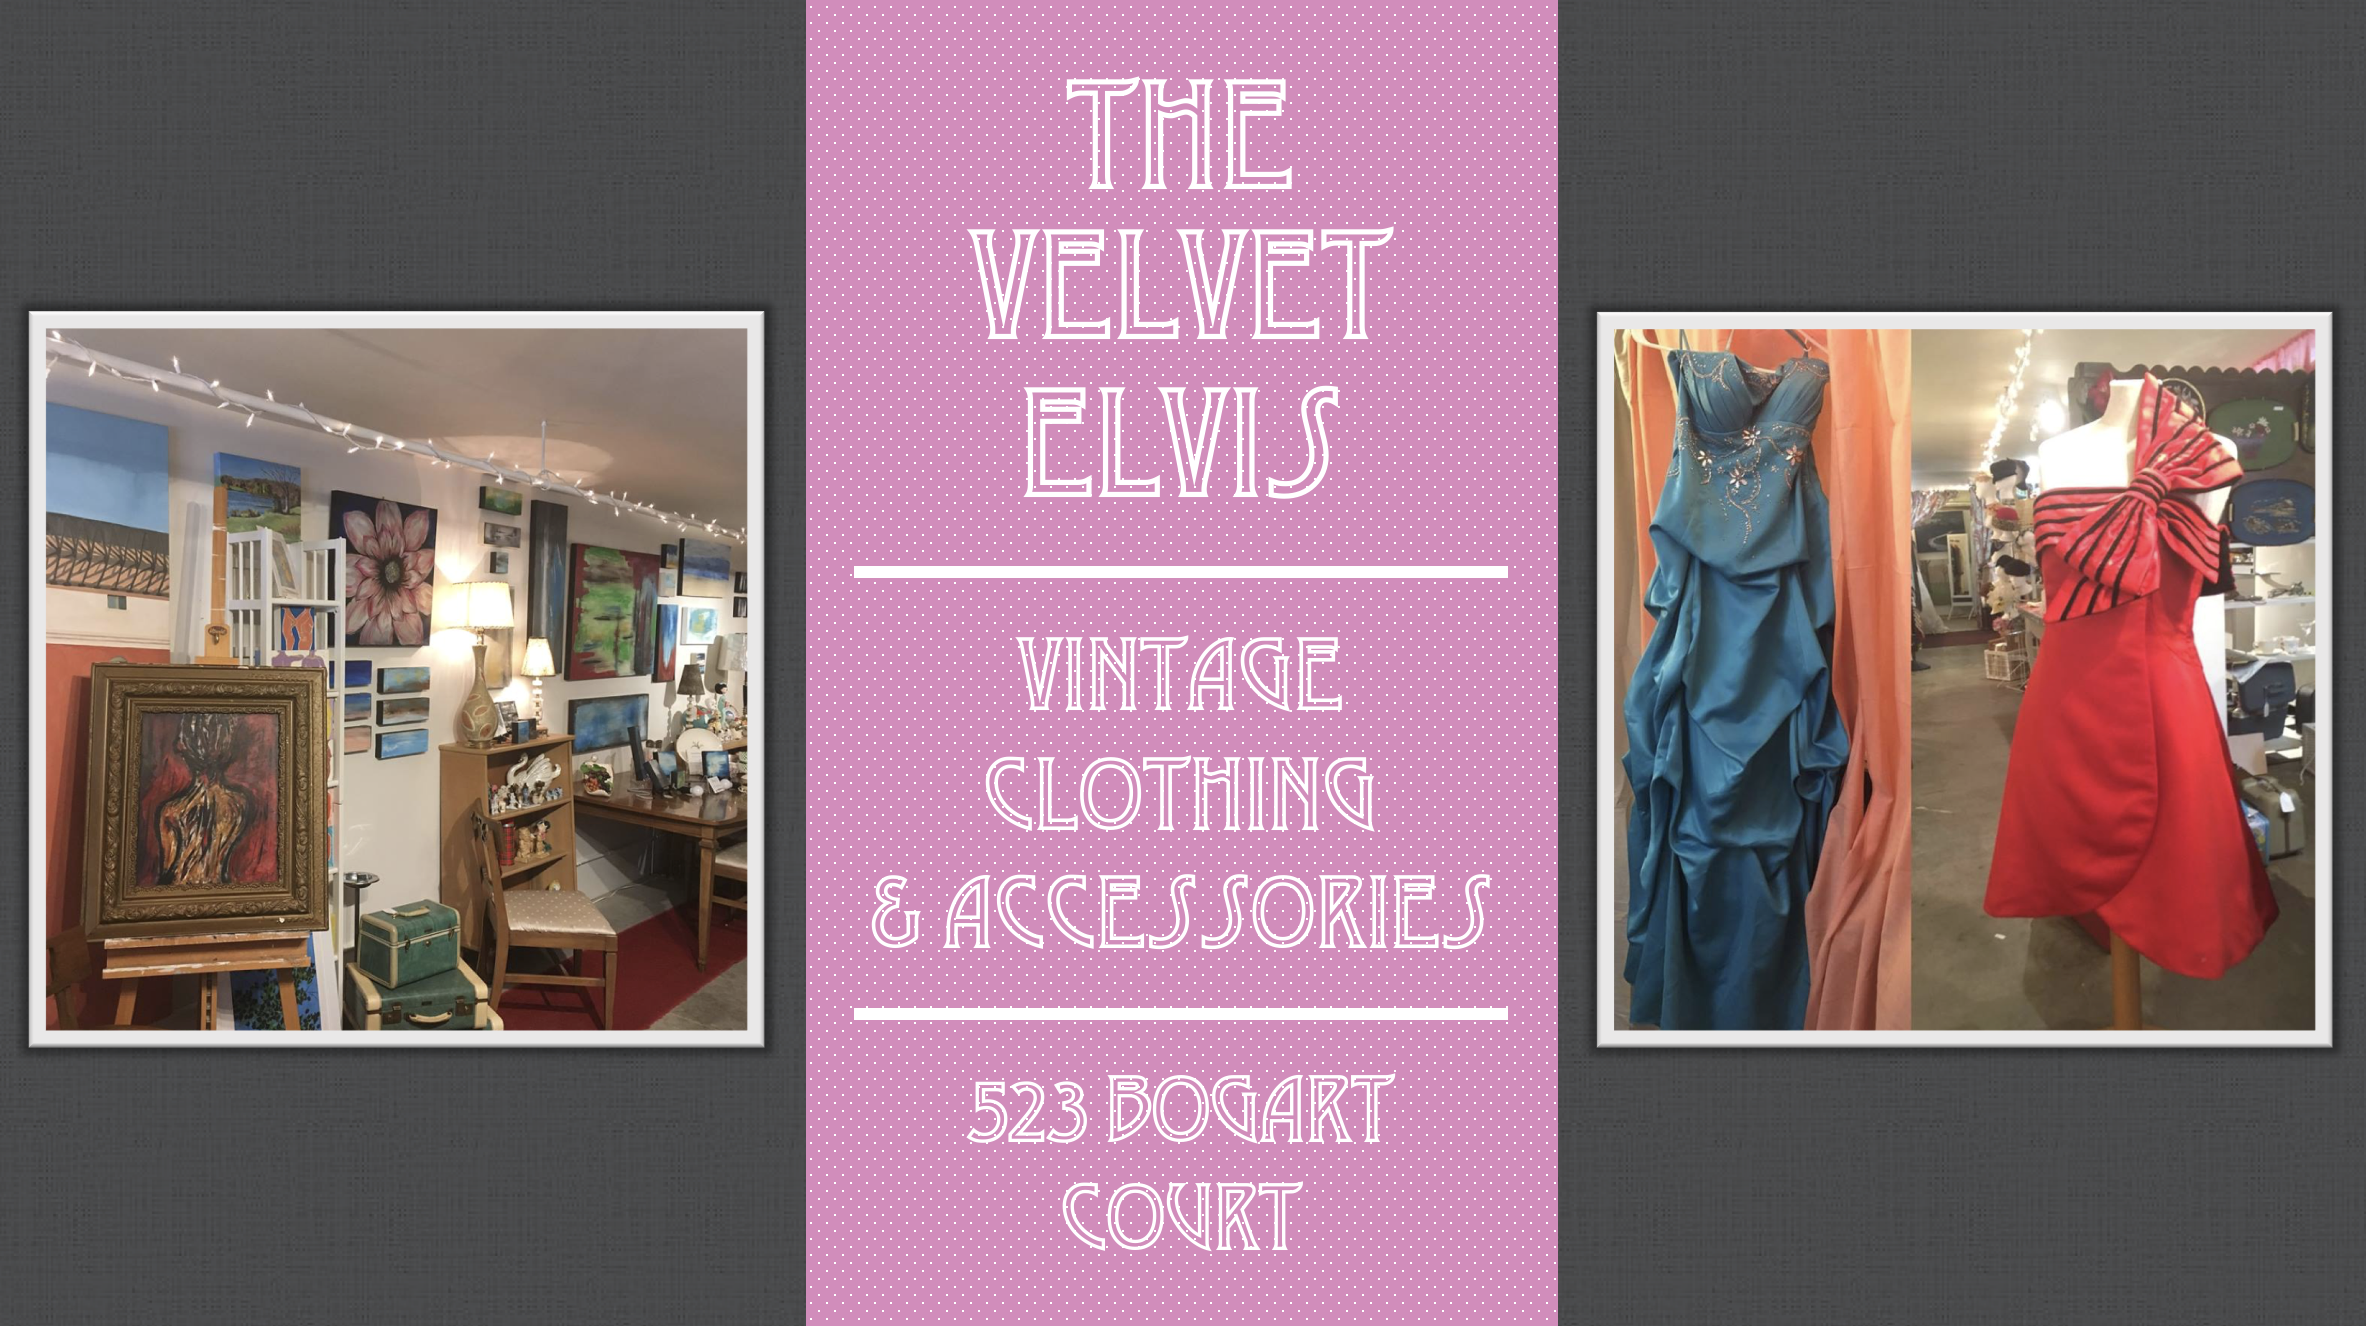 Business Alert: The Velvet Elvis